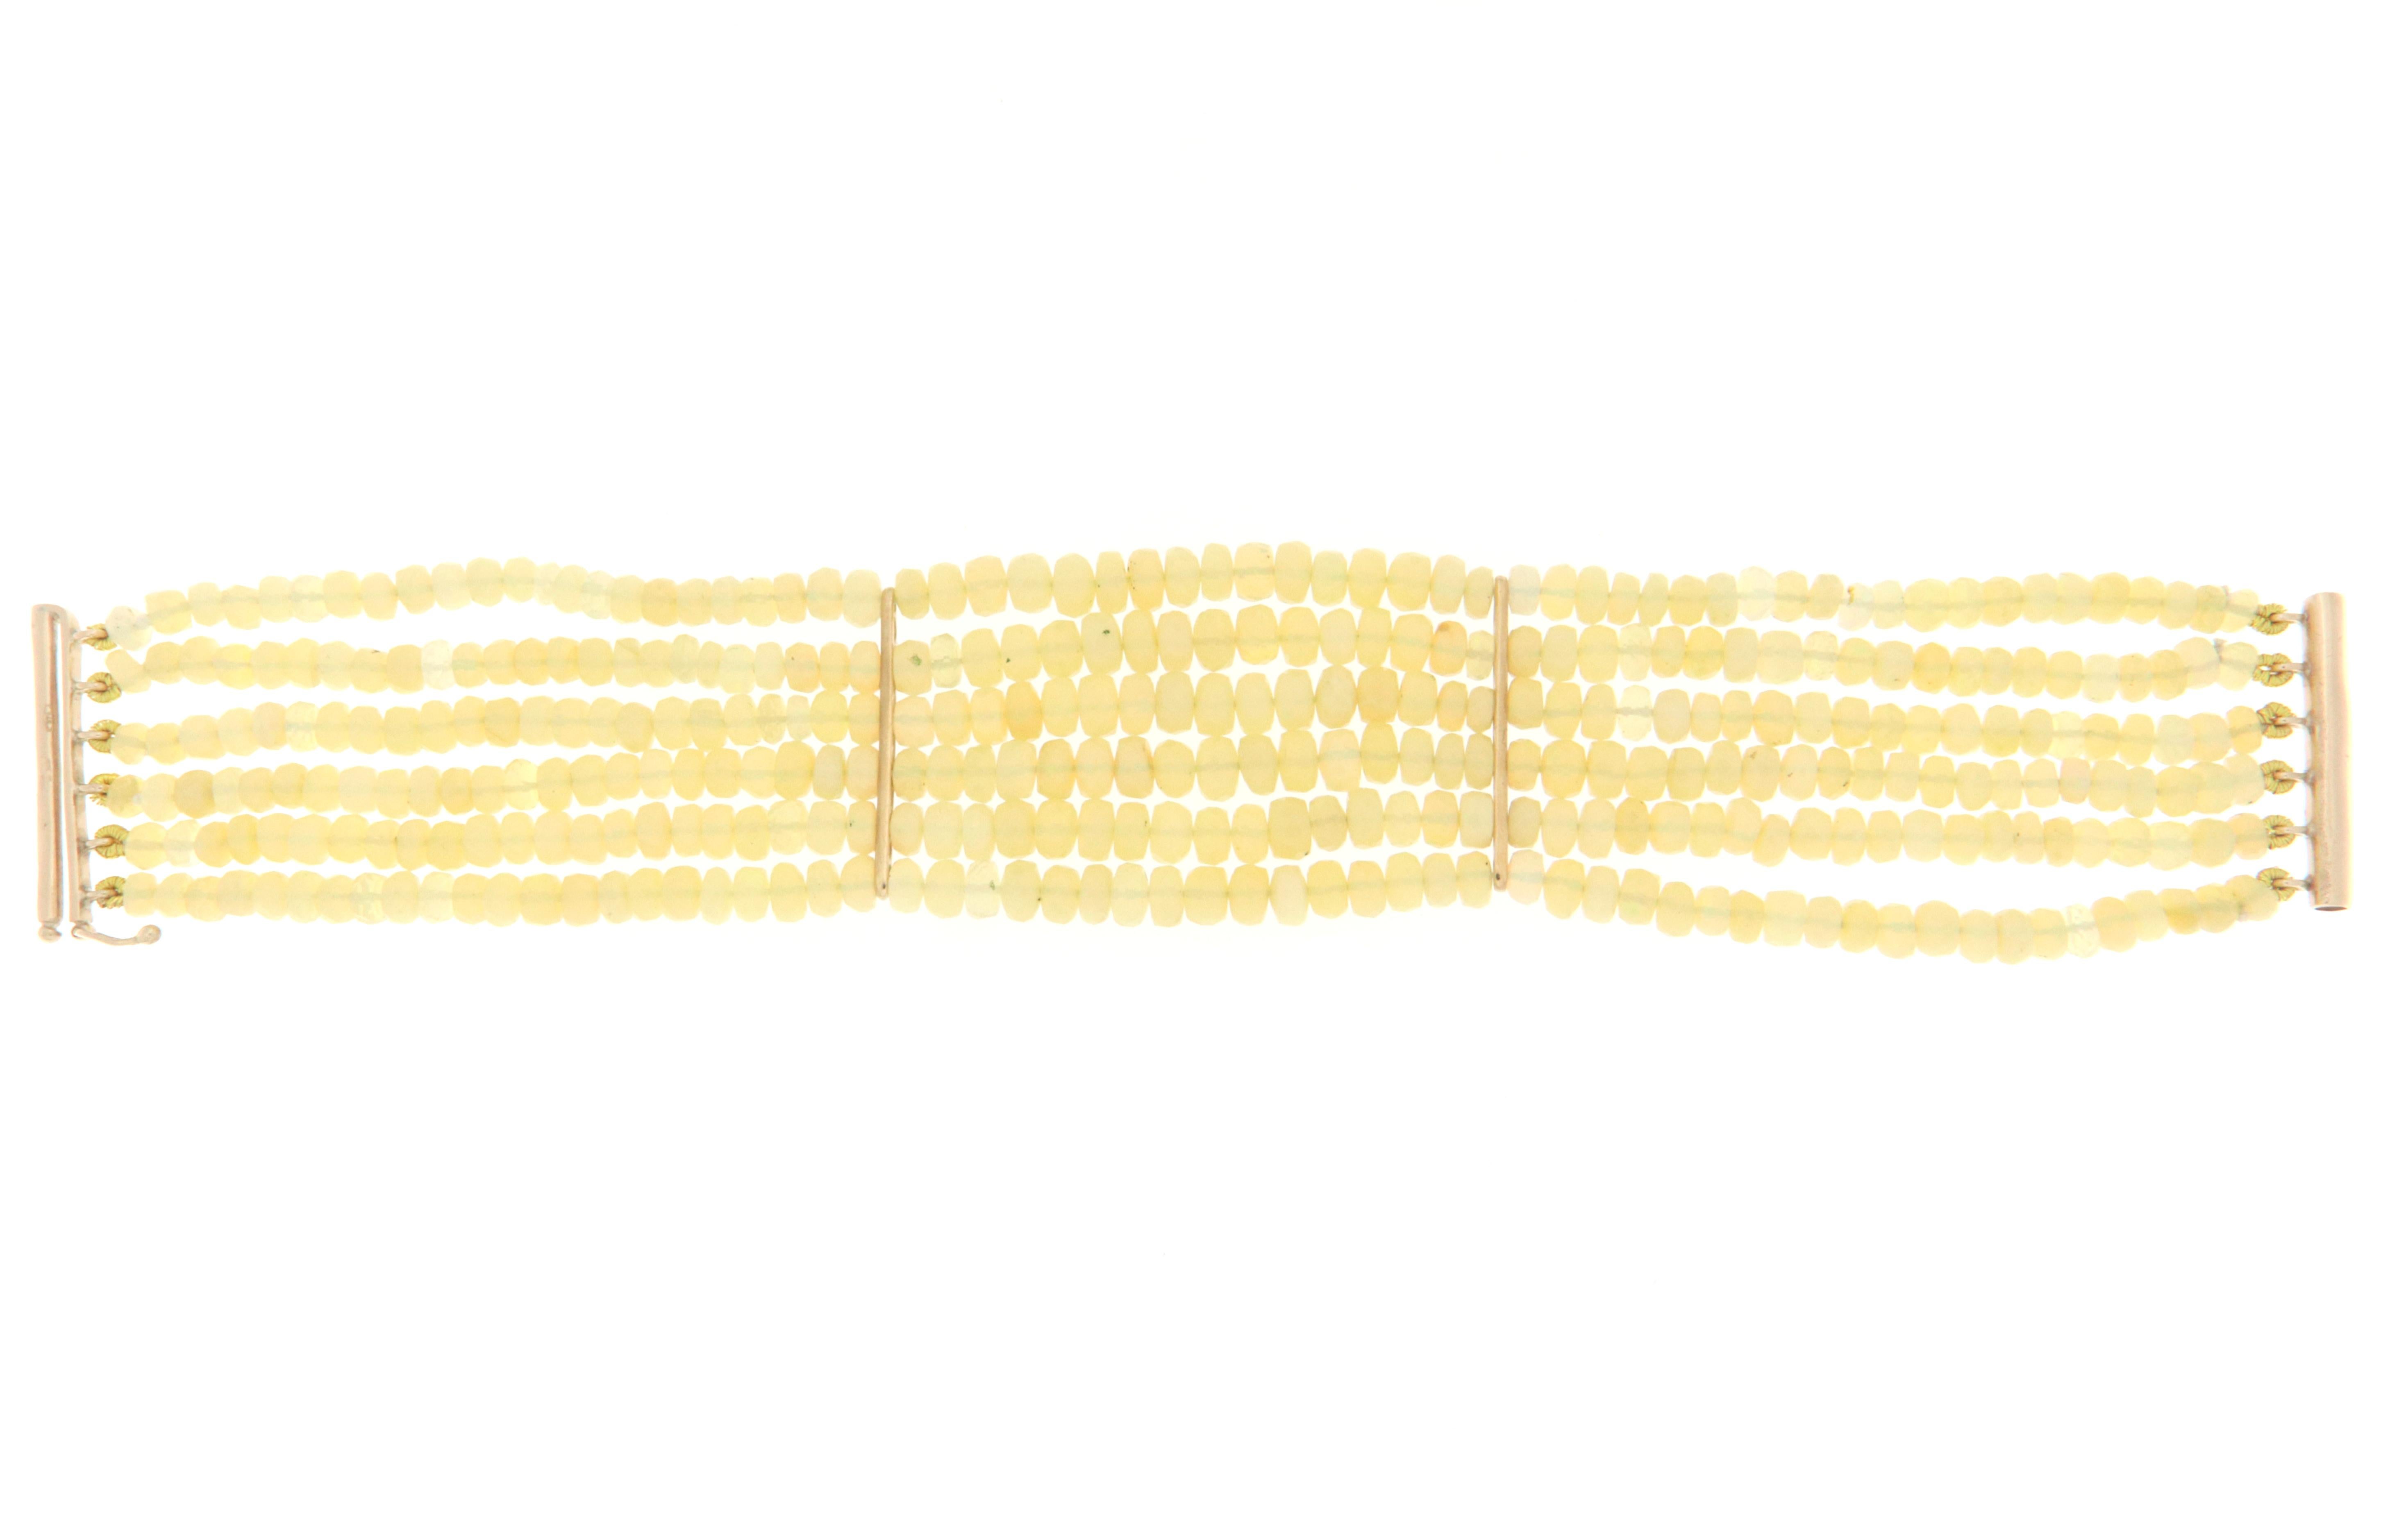 Handgefertigtes Perlenarmband aus 9 Karat Gelbgold.  Handgefertigt von unseren Handwerkern mit natürlichen Opalen zusammengesetzt Perlen.

Nur Opale Gewicht 125 Karat
Gesamtgewicht des Armbands 30 Gramm 
Armband 19 cm (Länge)